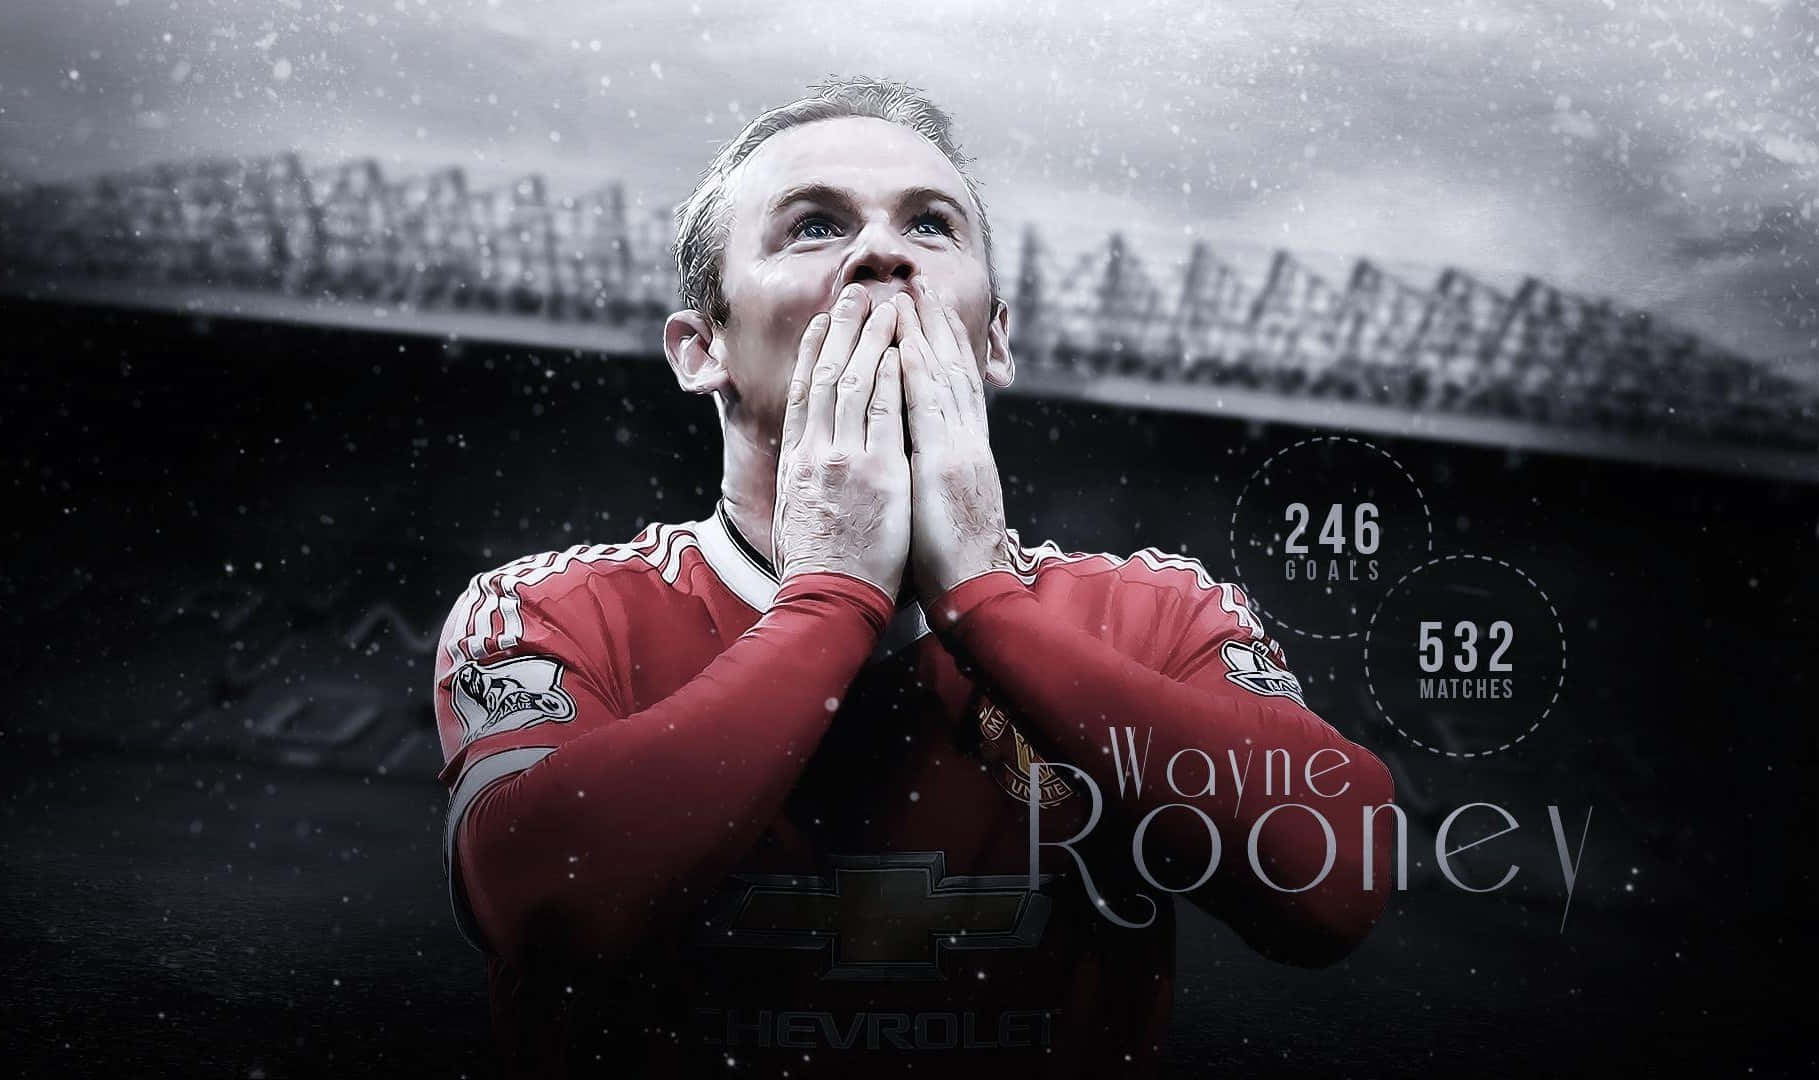 Imagende Wayne Rooney Anotando Goles De Fútbol.